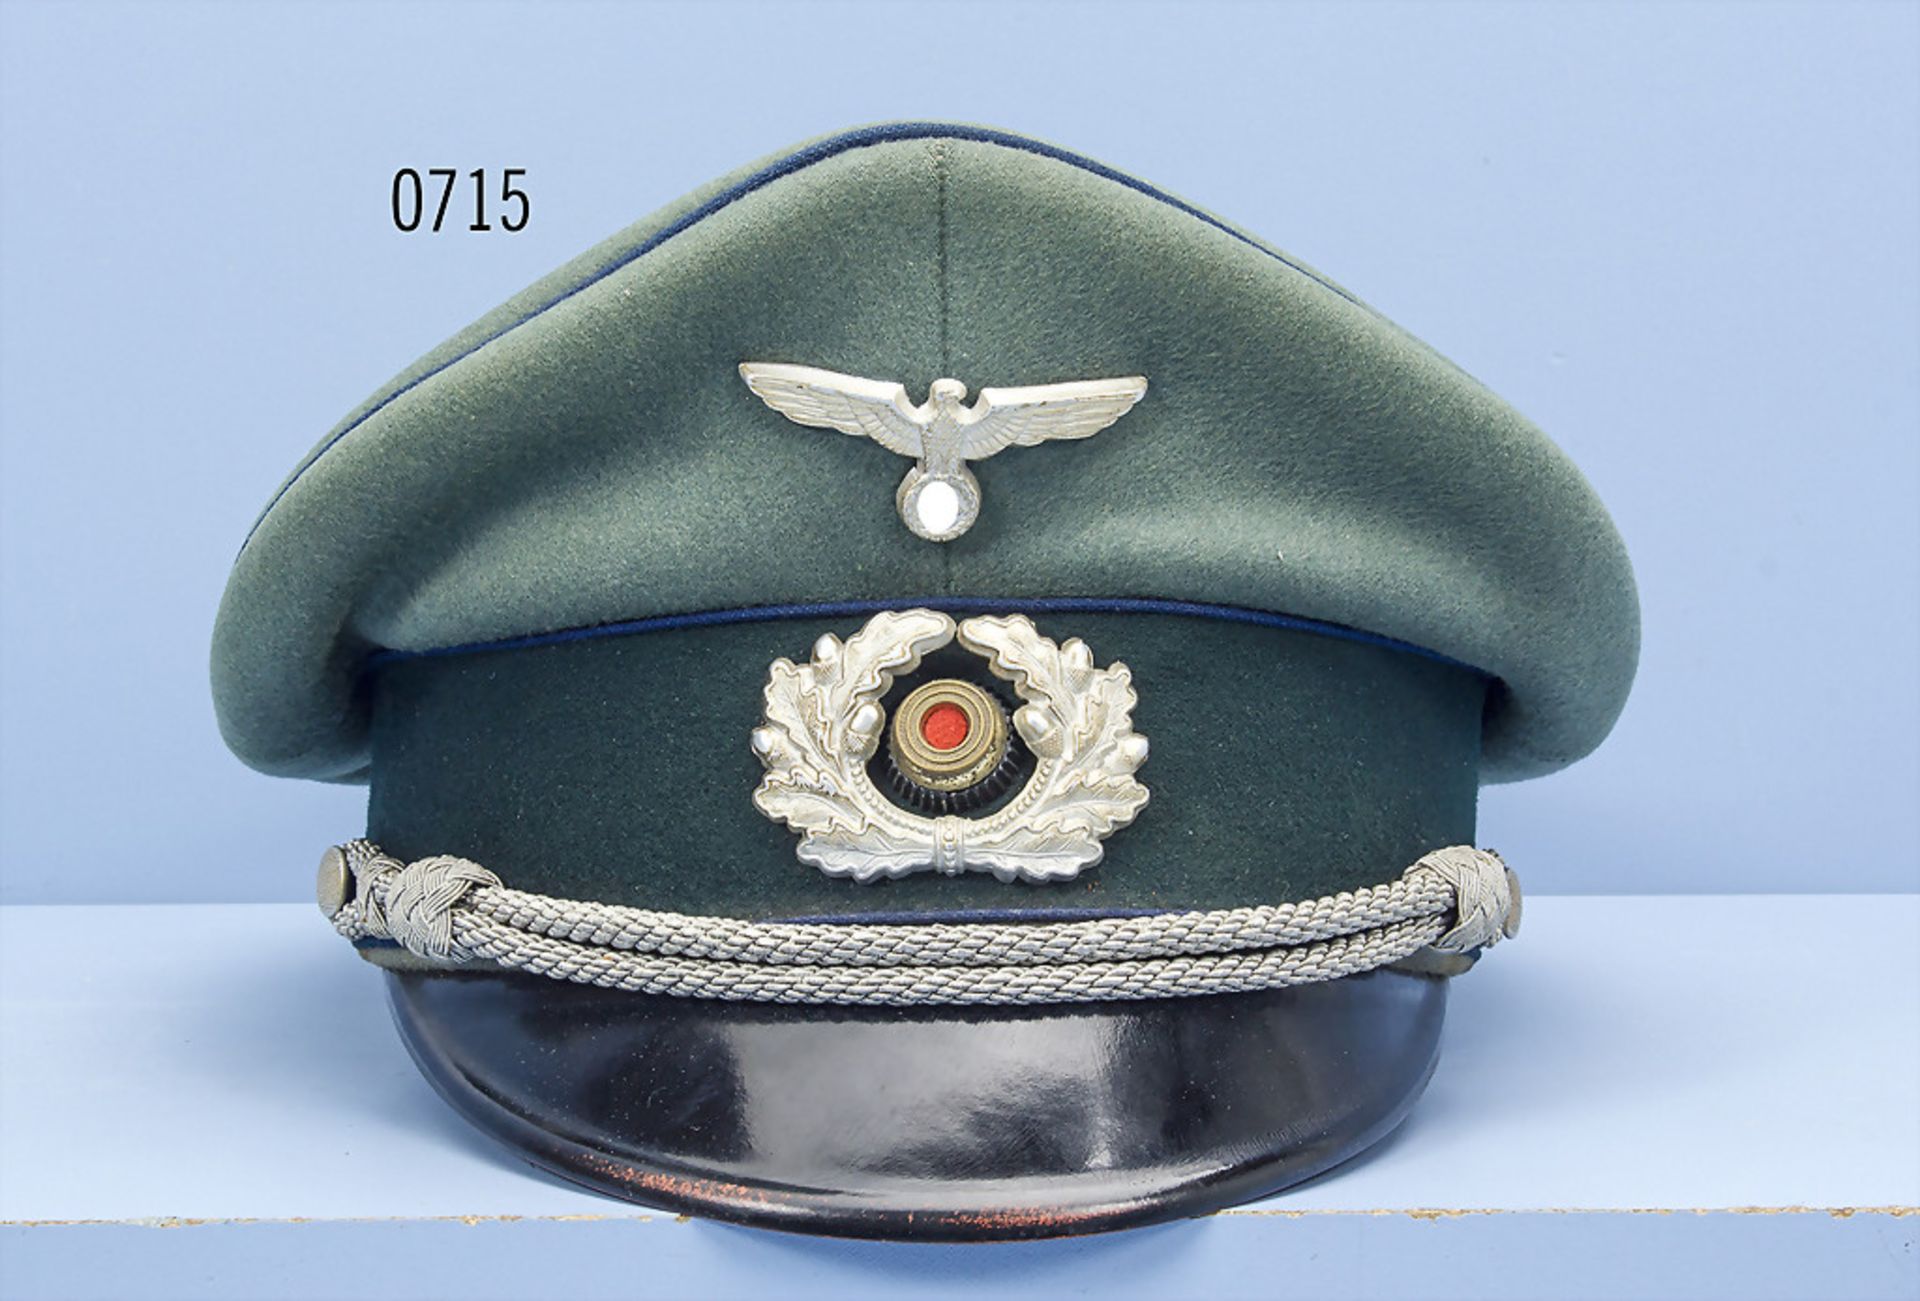 Schirmmütze für Sanitäts-Offiziere der Wehrmacht, Hersteller "Erel", guter Zustand mit Alters- und